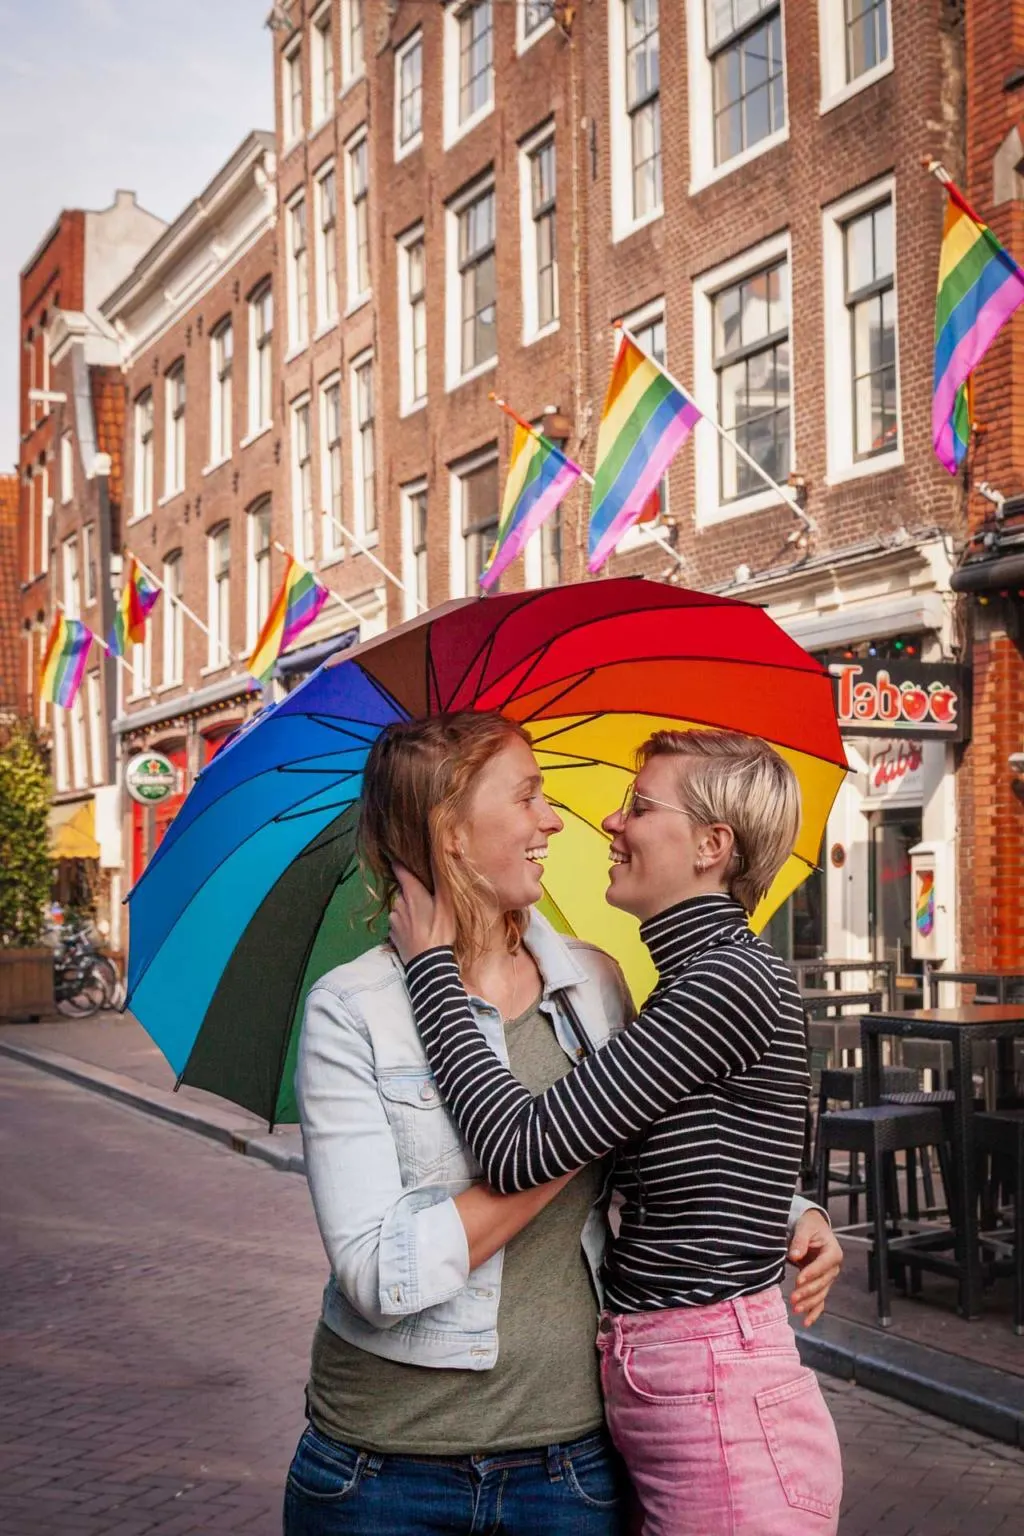 Reguliersdwarsstraat, lesbian couple, Amsterdam